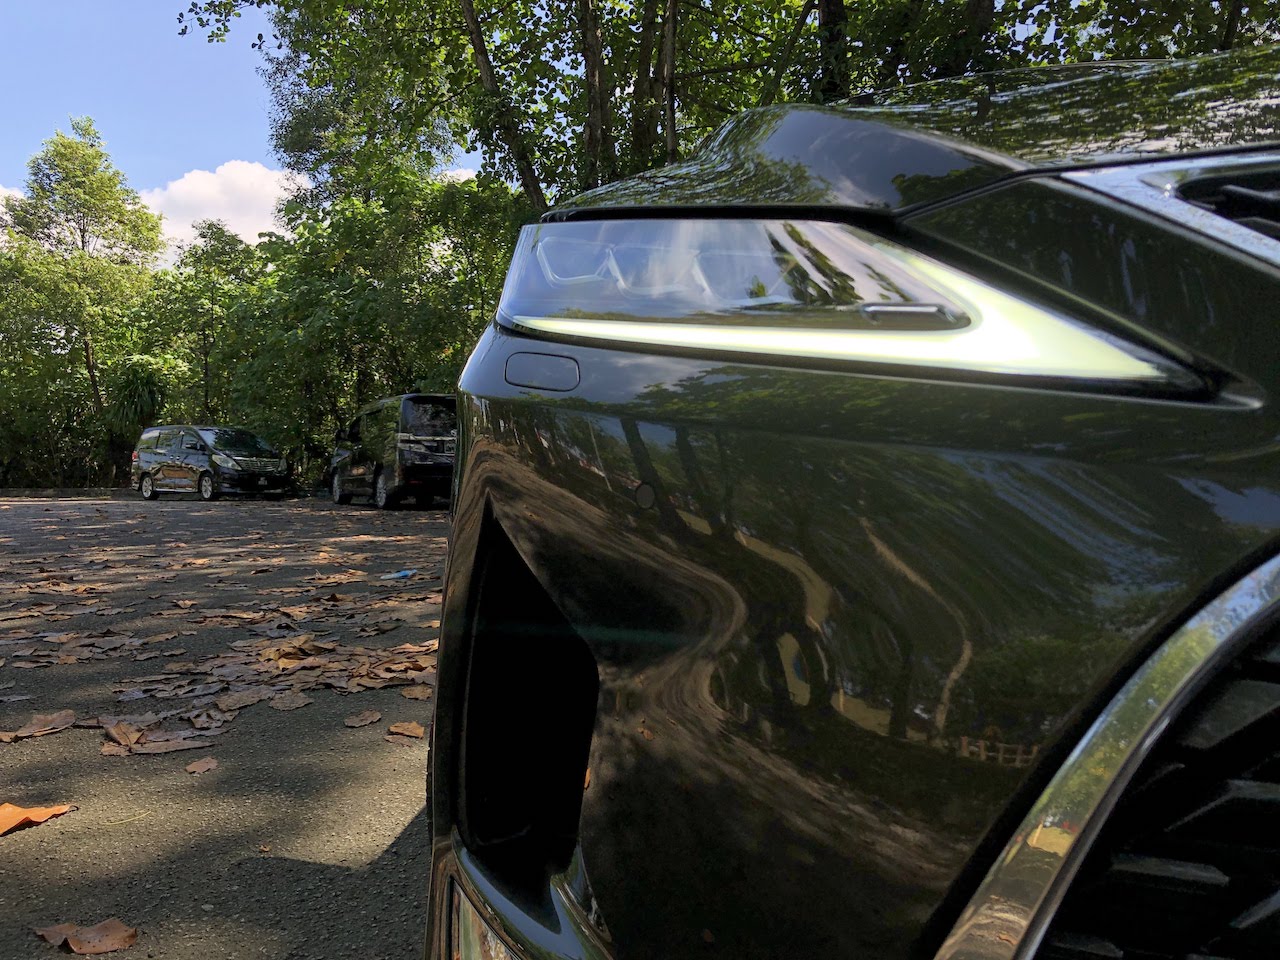 Lexus RX 300 test drive review